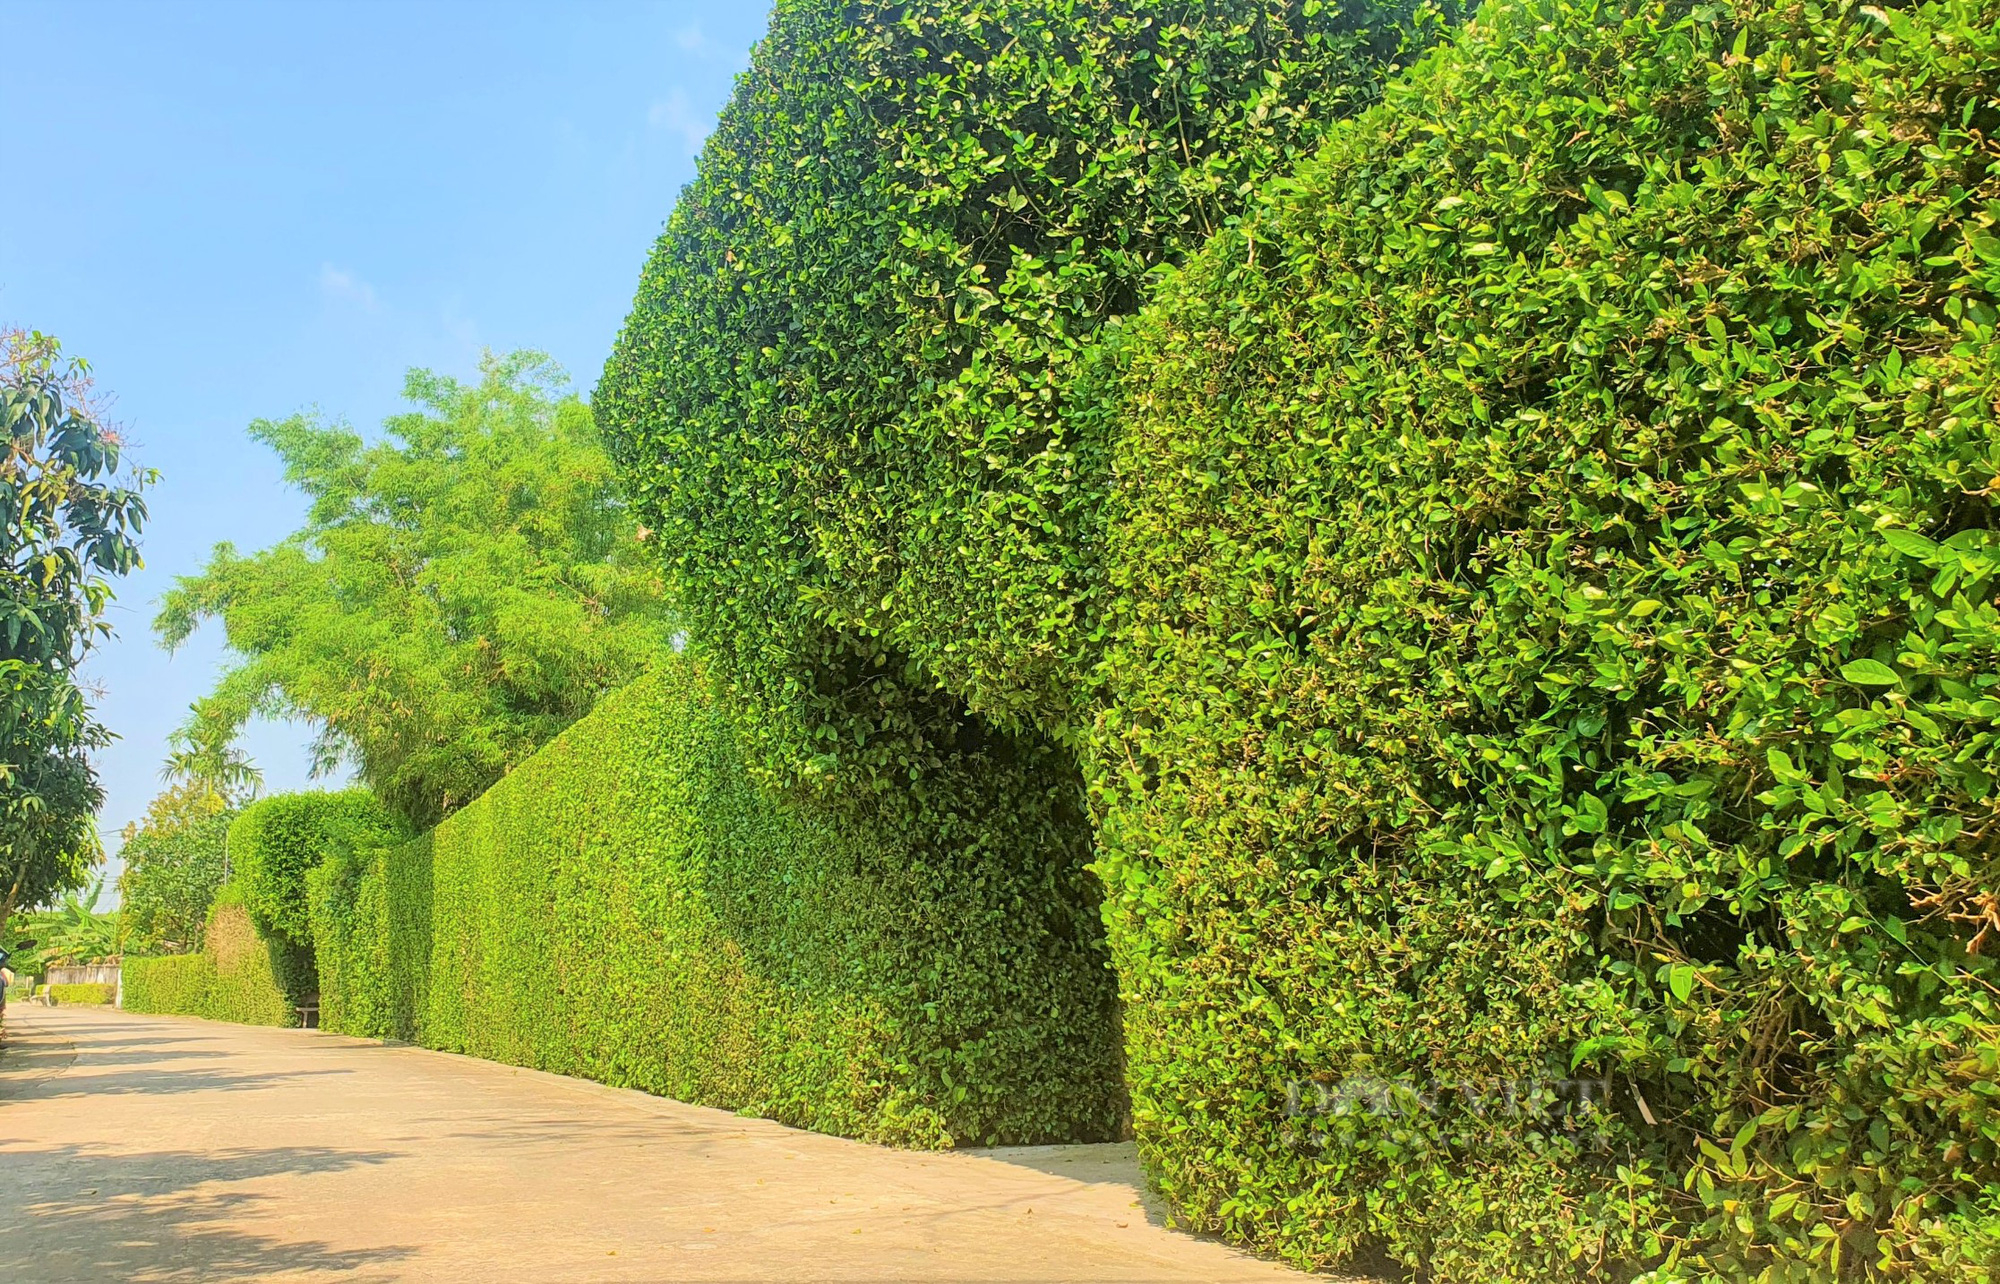 Lạ mắt những cổng nhà, hàng rào được kết bằng cây xanh trăm năm ở làng quê Hà Tĩnh - Ảnh 5.